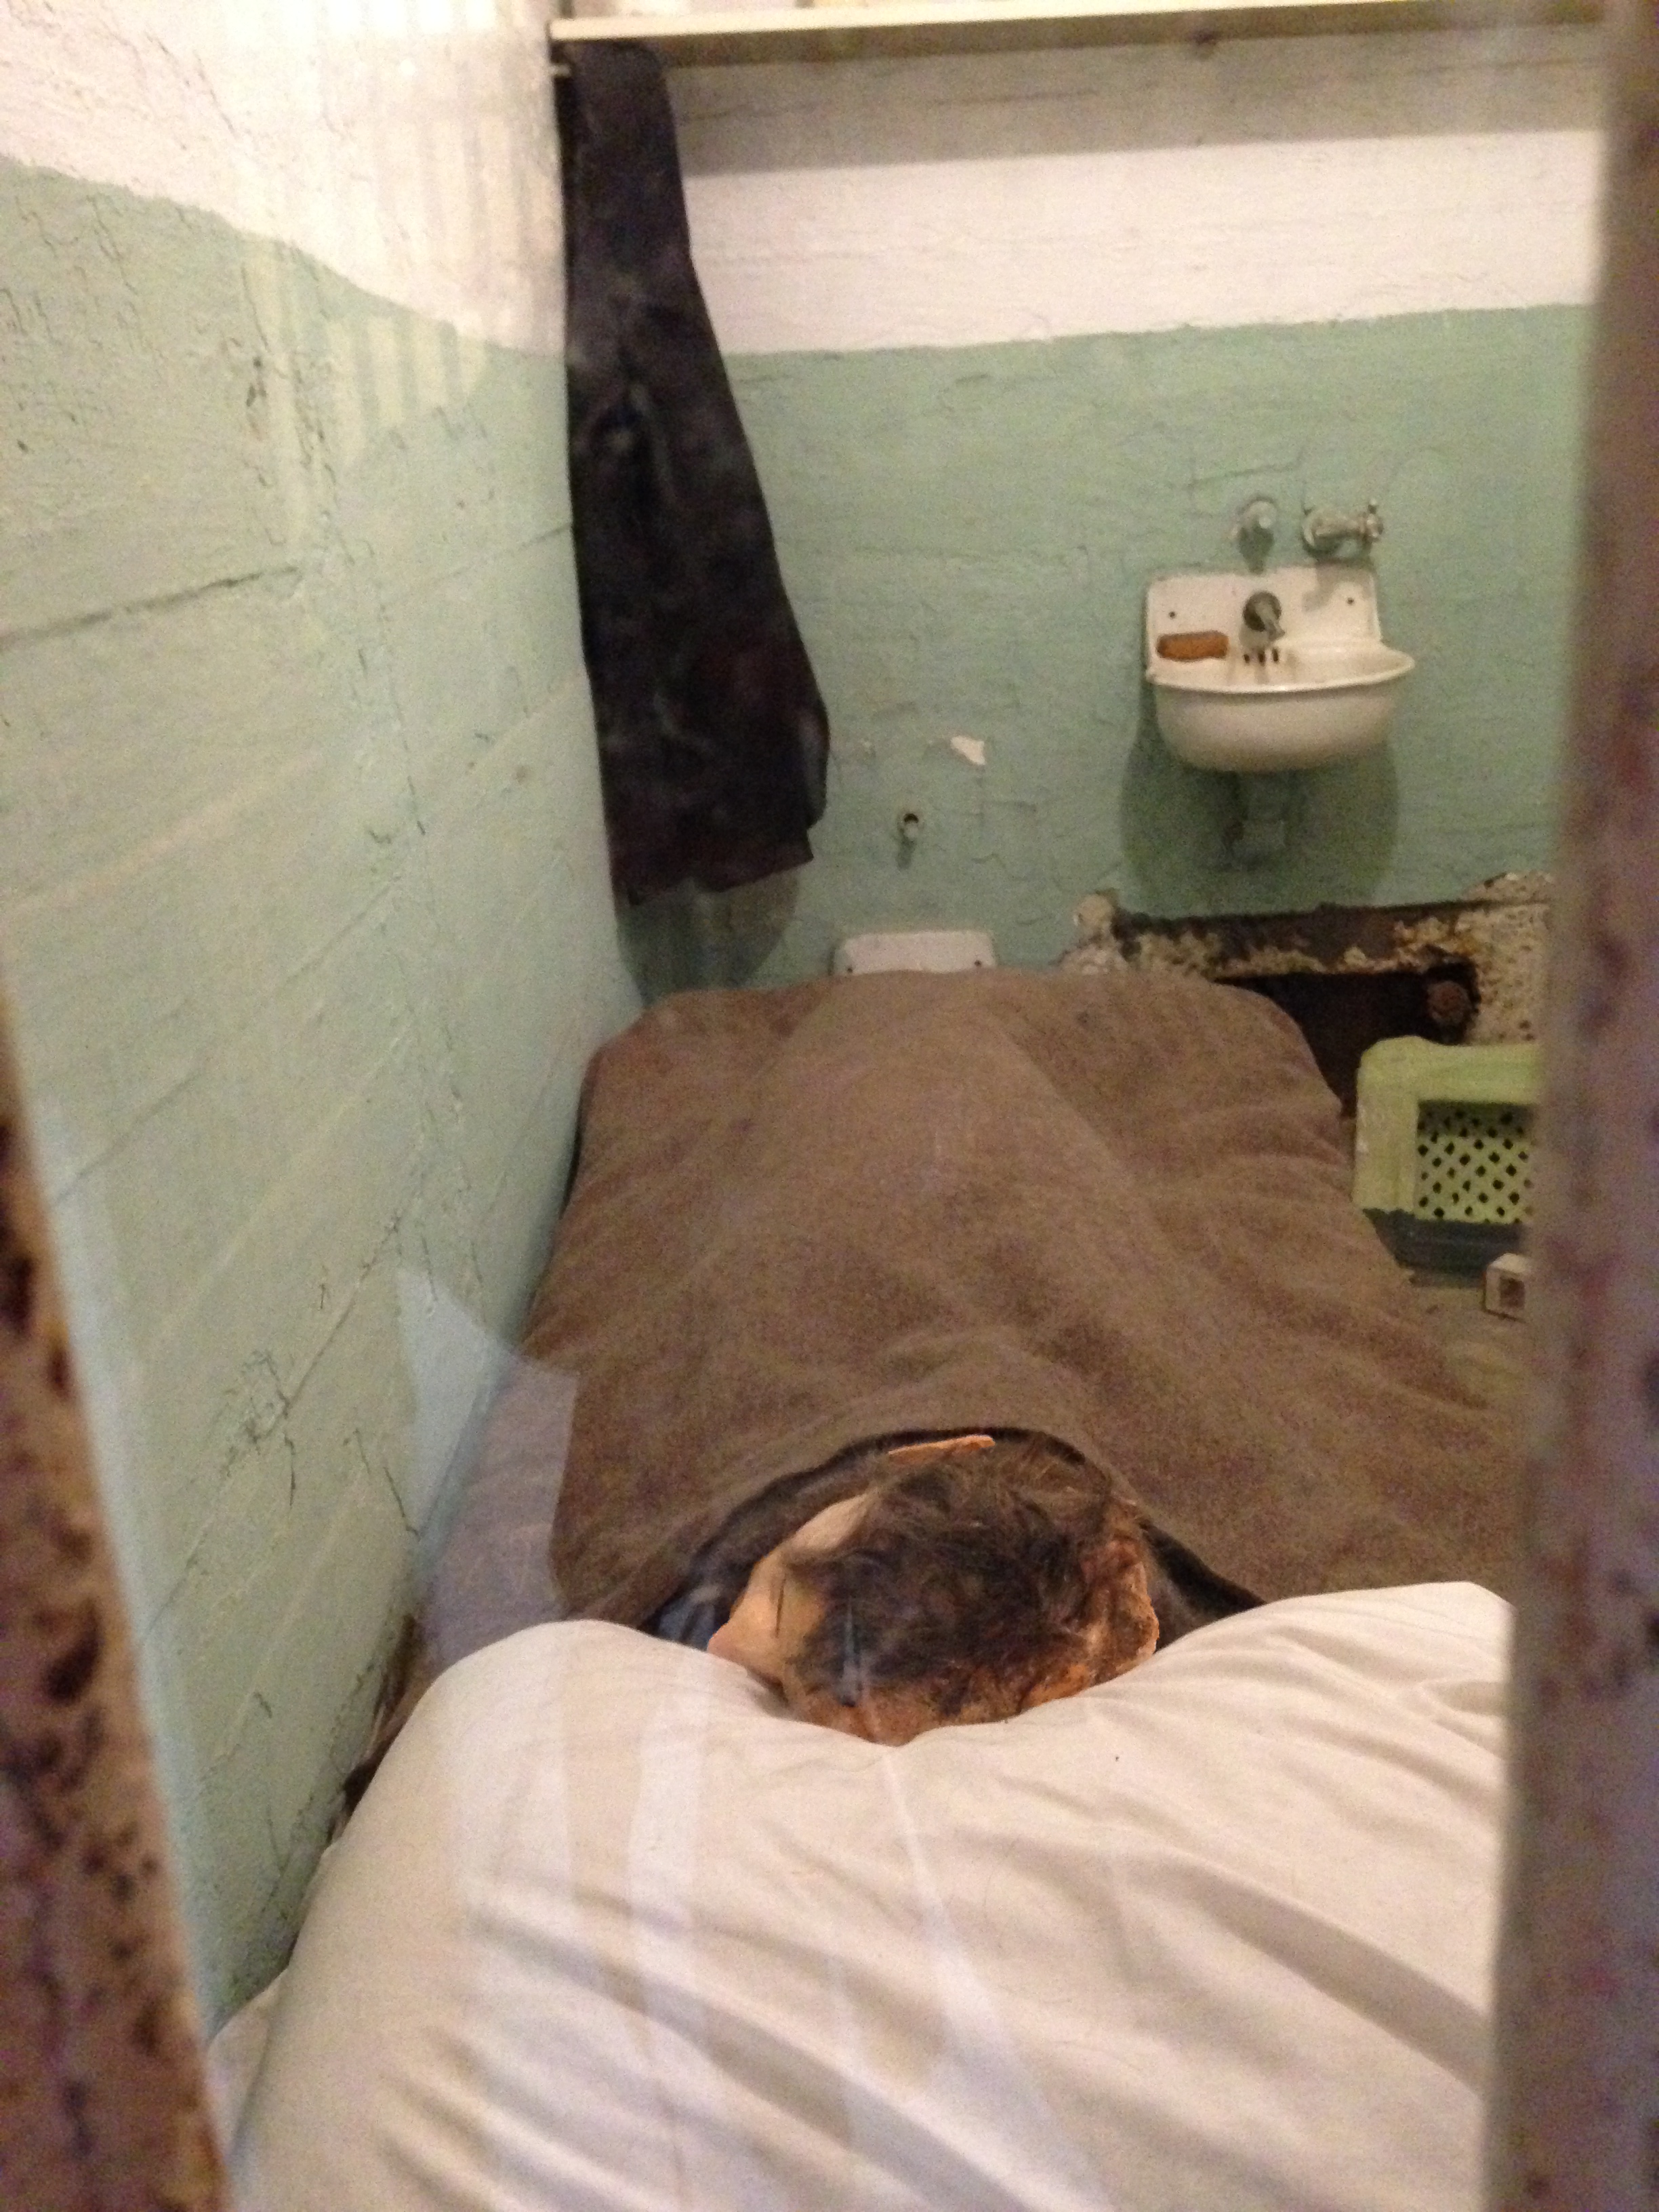 20140426 233139158 ios - Una visita a la Cárcel de Alcatraz